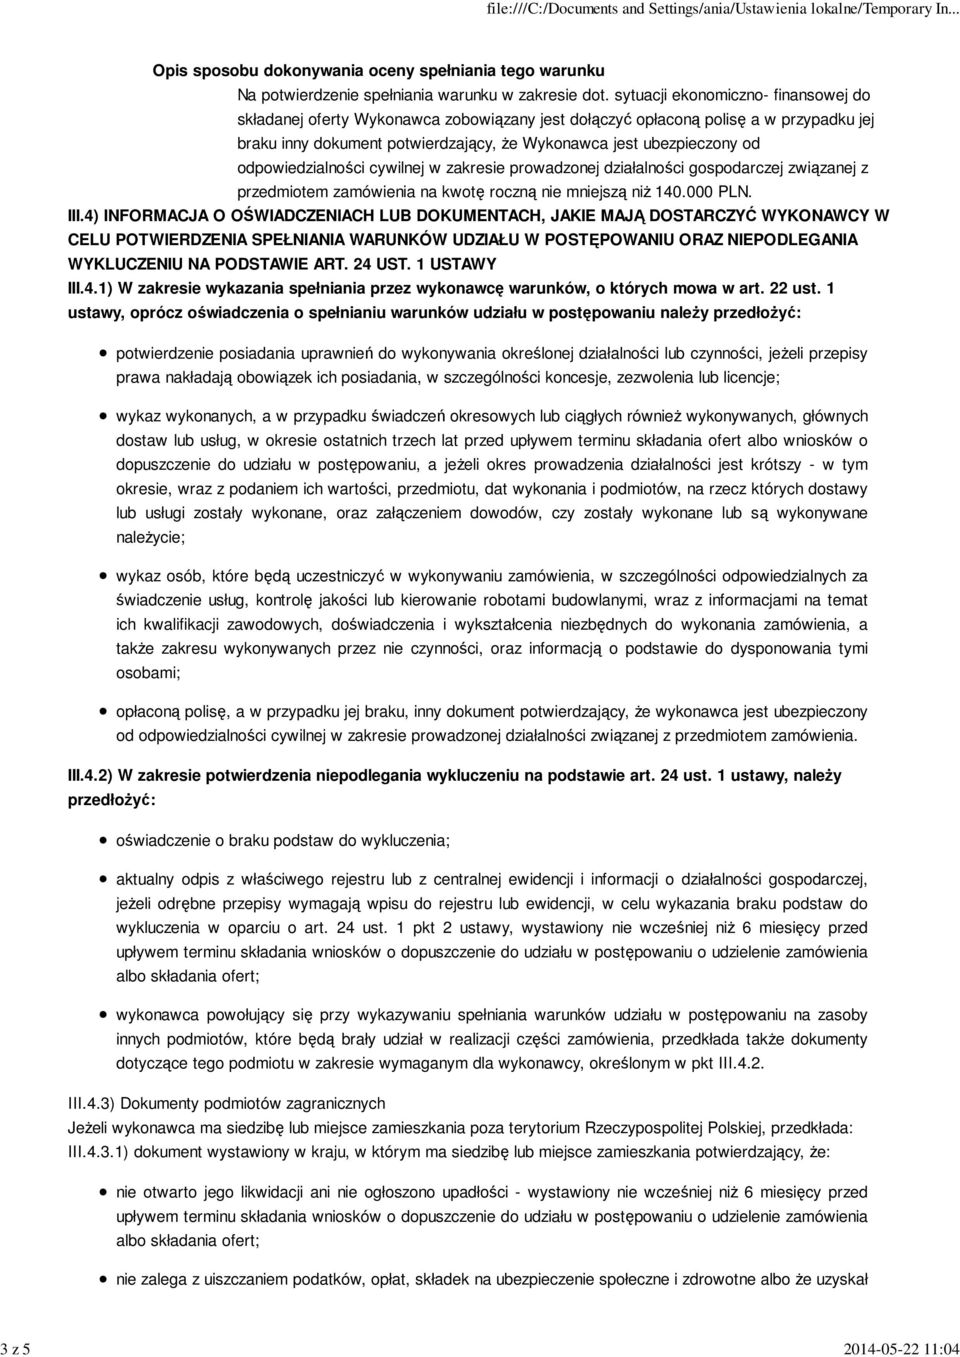 odpowiedzialności cywilnej w zakresie prowadzonej działalności gospodarczej związanej z przedmiotem zamówienia na kwotę roczną nie mniejszą niż 140.000 PLN. III.